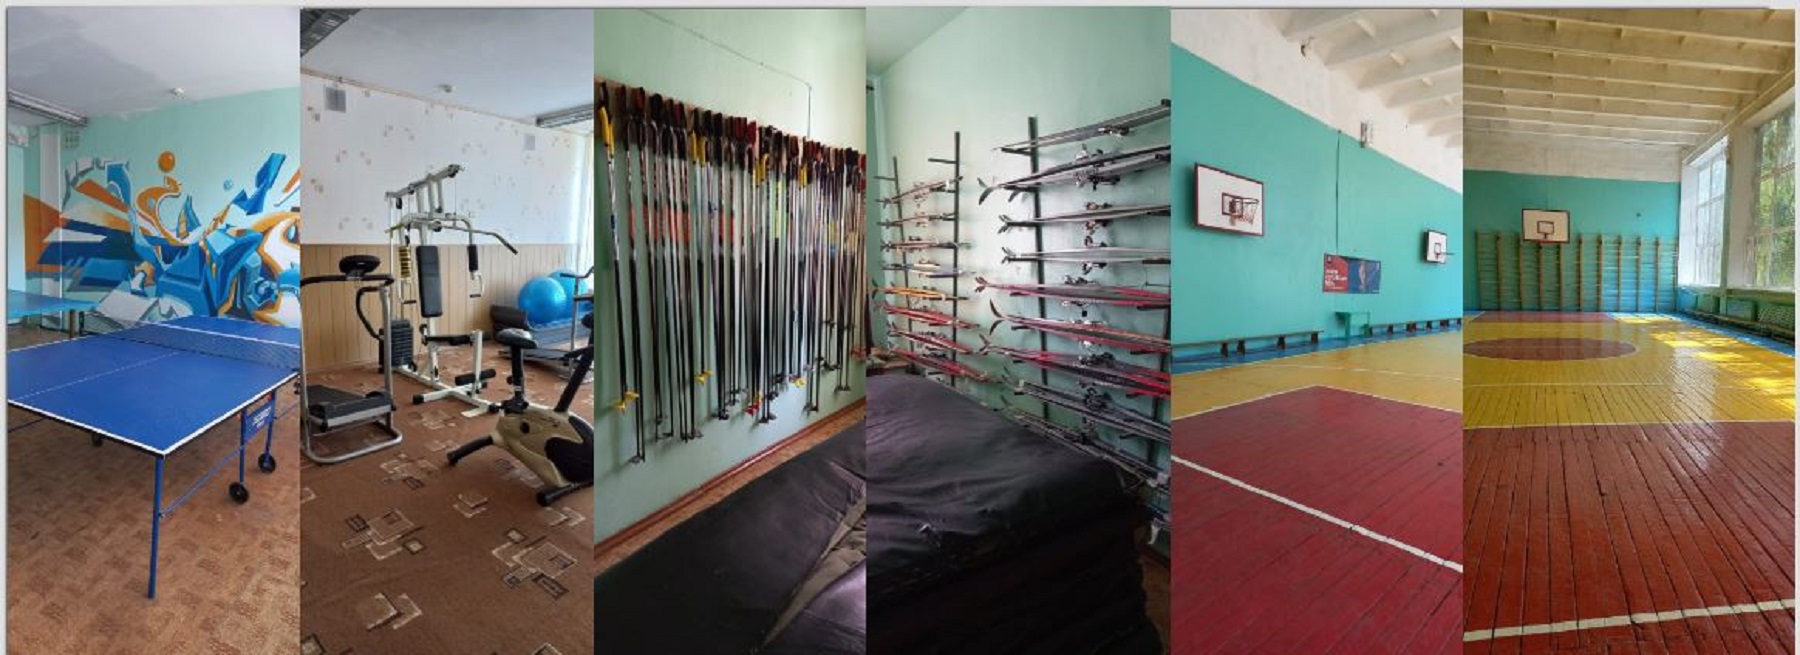 Спортивный зал, тренажерный зал, лыжная база школы №15 г. Балашова Саратовской области